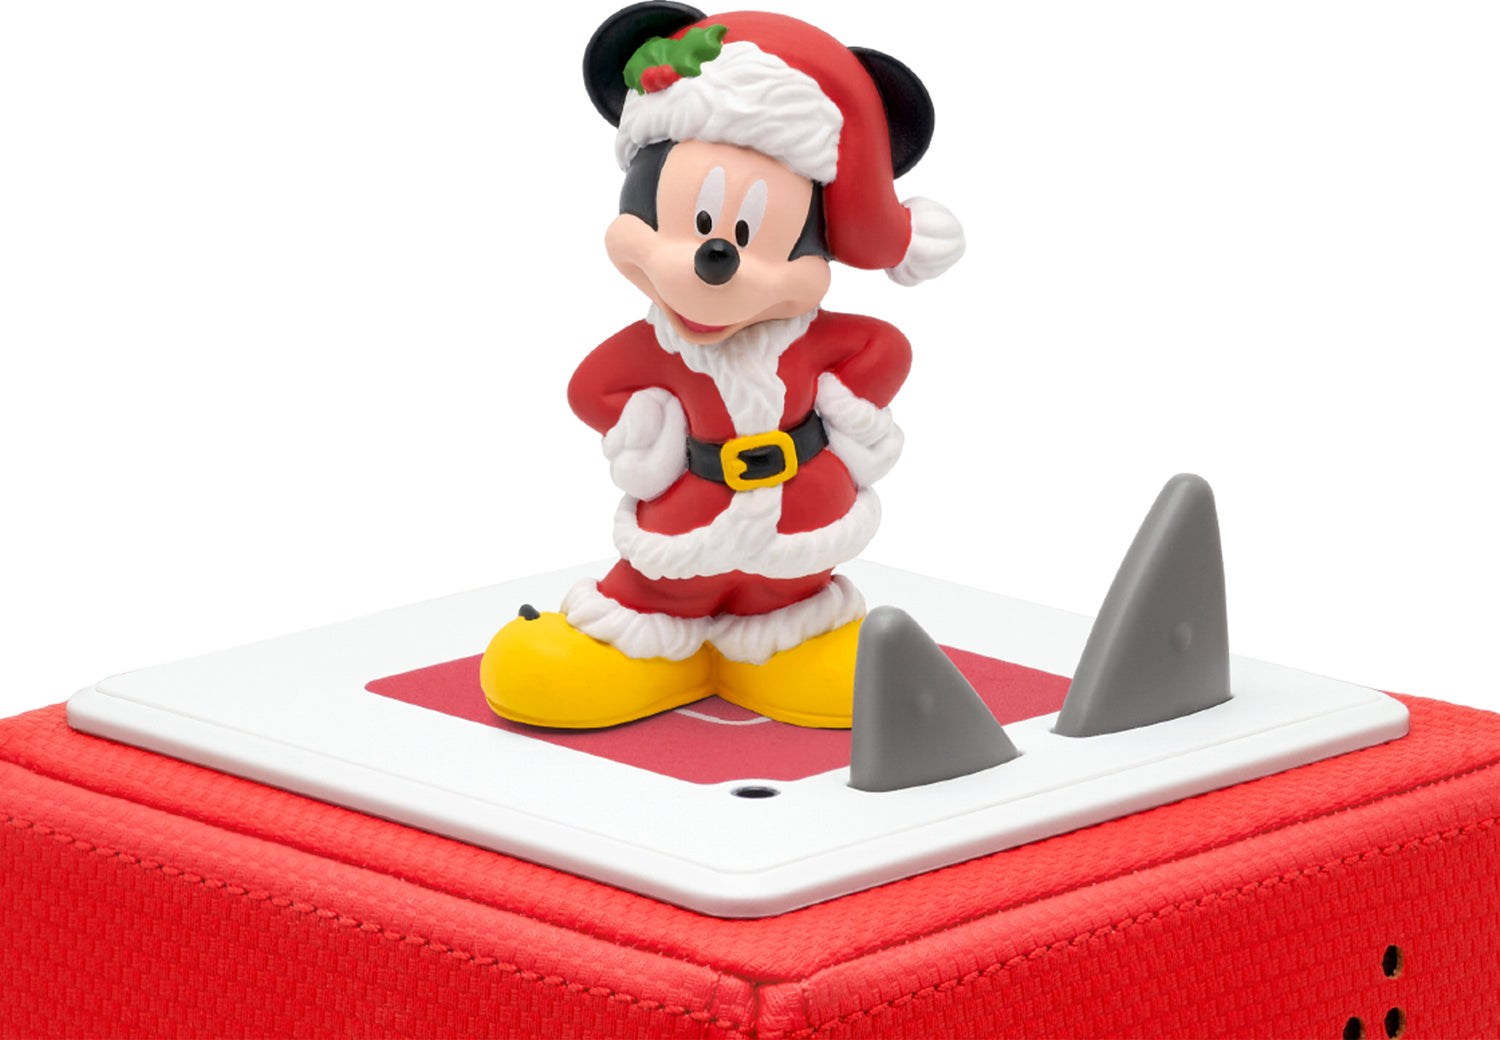 tonies - Disney Holiday Mickey